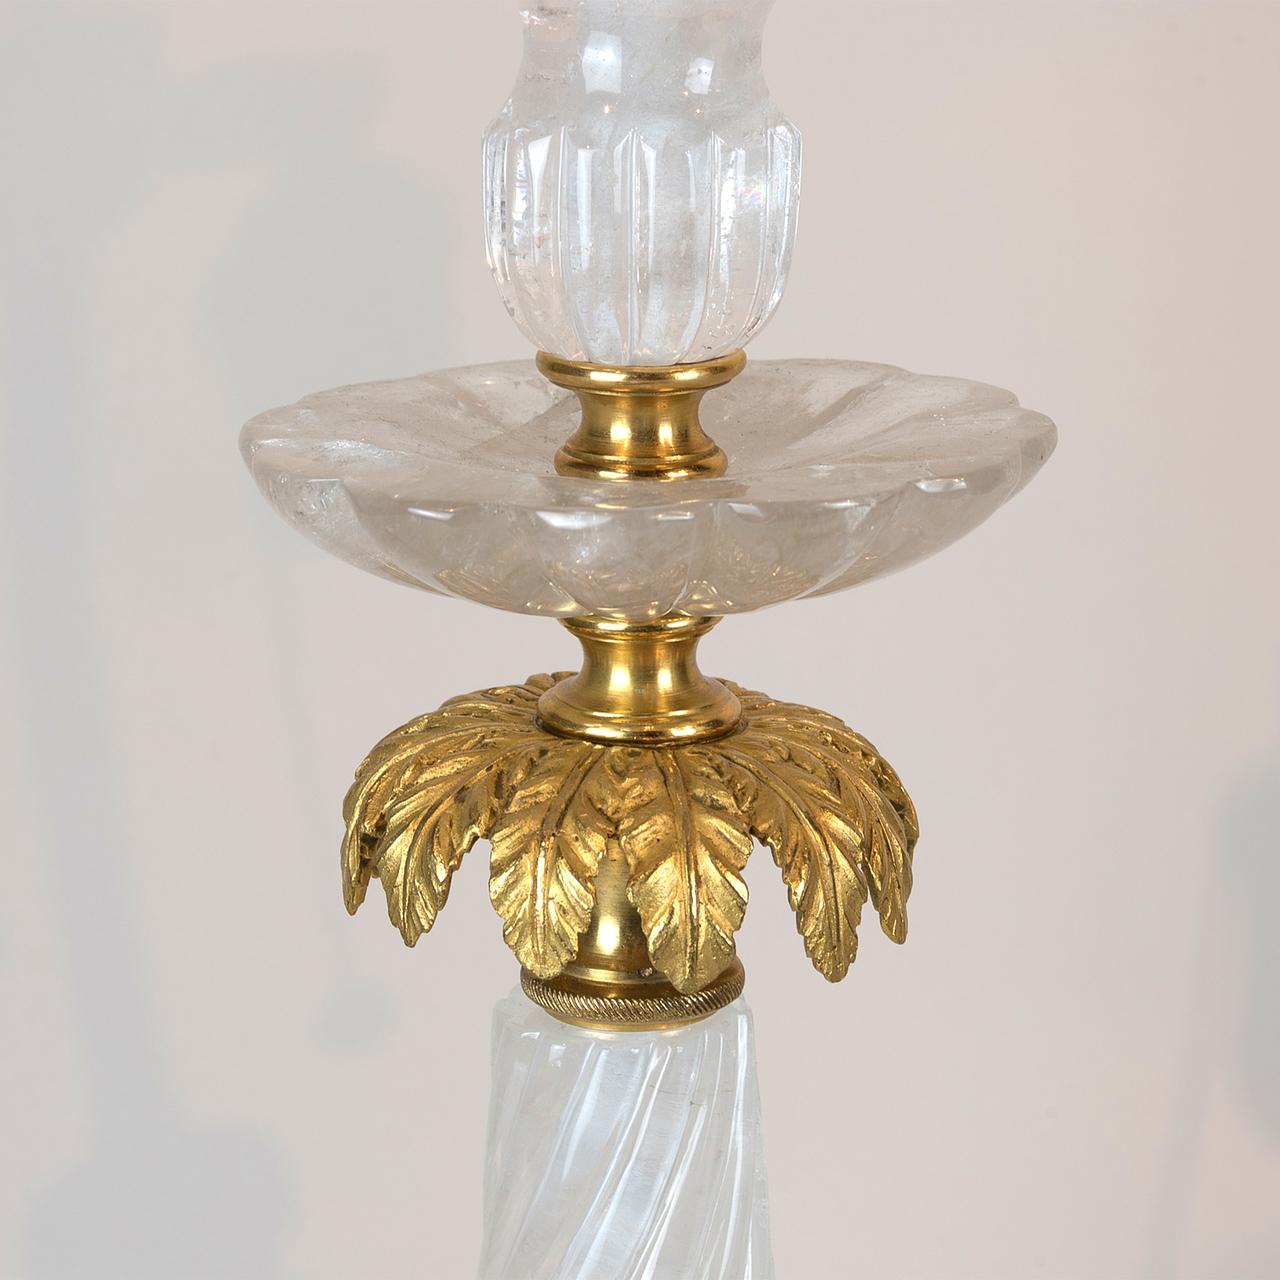 Une paire de lampes de table en forme de perle en bronze doré et cristal de roche. 

Origine : Continental
Date : Début du 20e siècle
Dimension : 31 1/4 po x 8 po x 8 po.